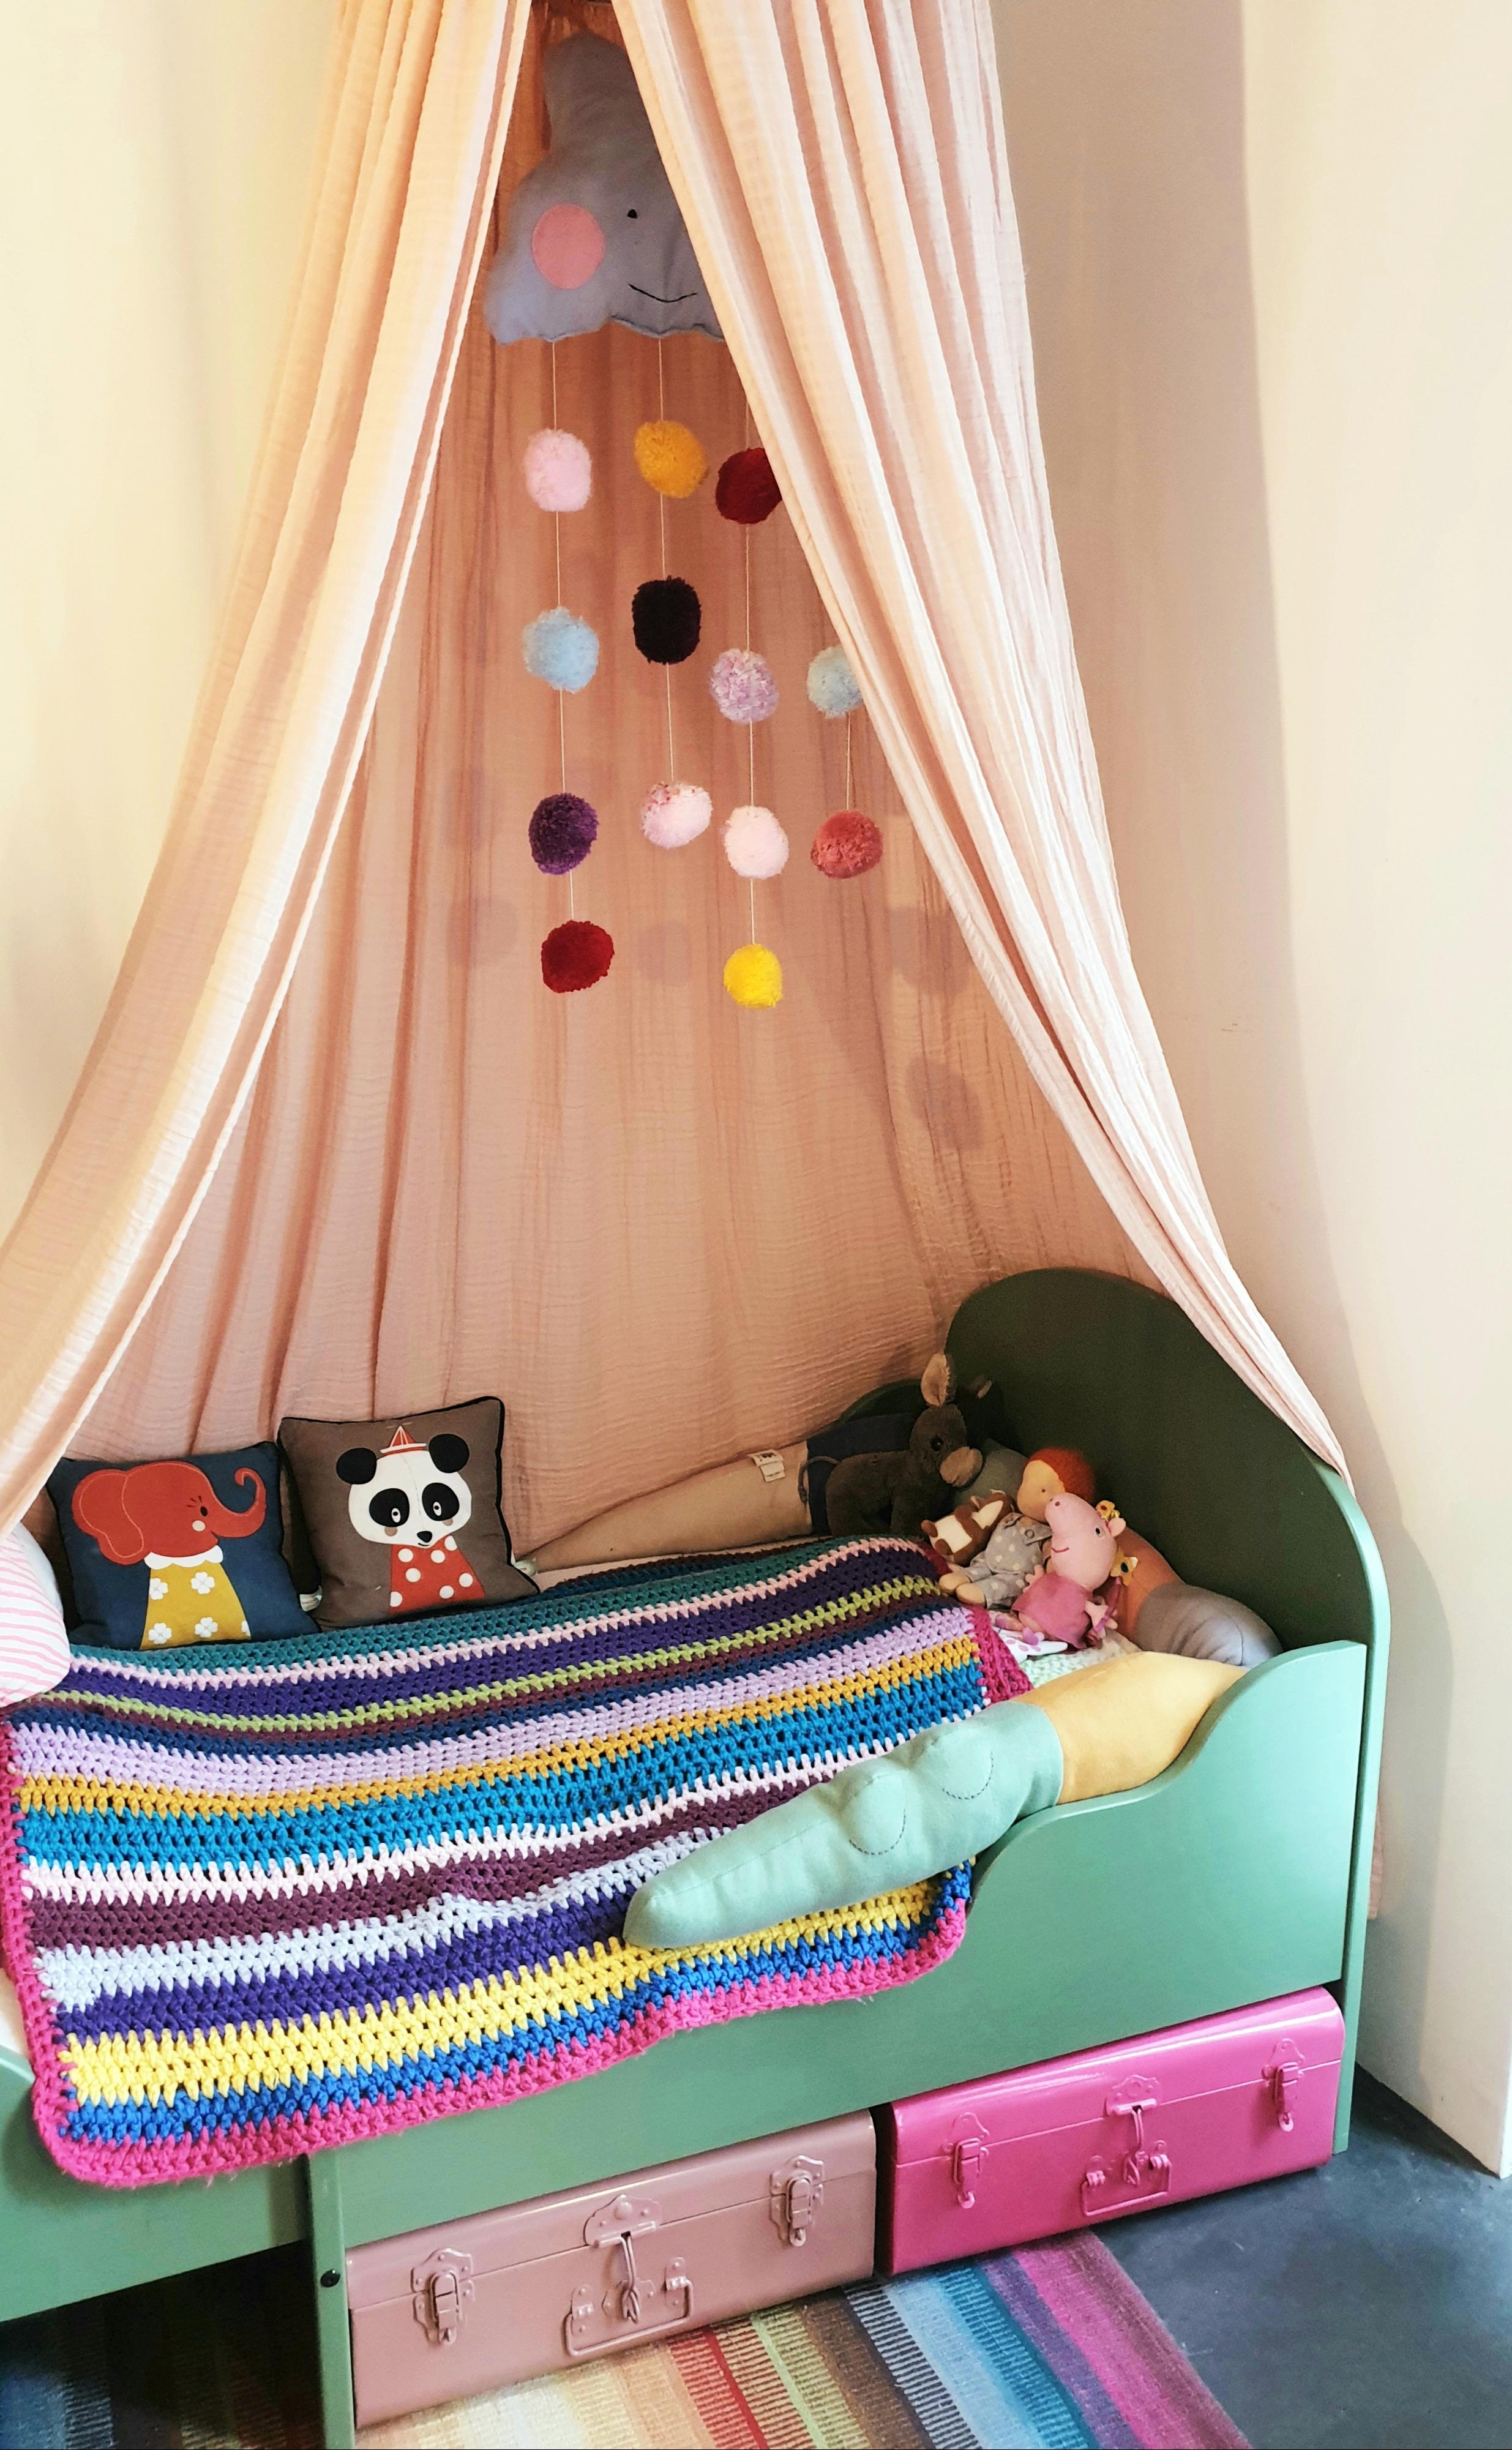 Das kleinste Bett im kleinsten Zimmer für das kleinste Mädchen unserer Familie...
#Kinderzimmer#Kinderbett#Baldachin